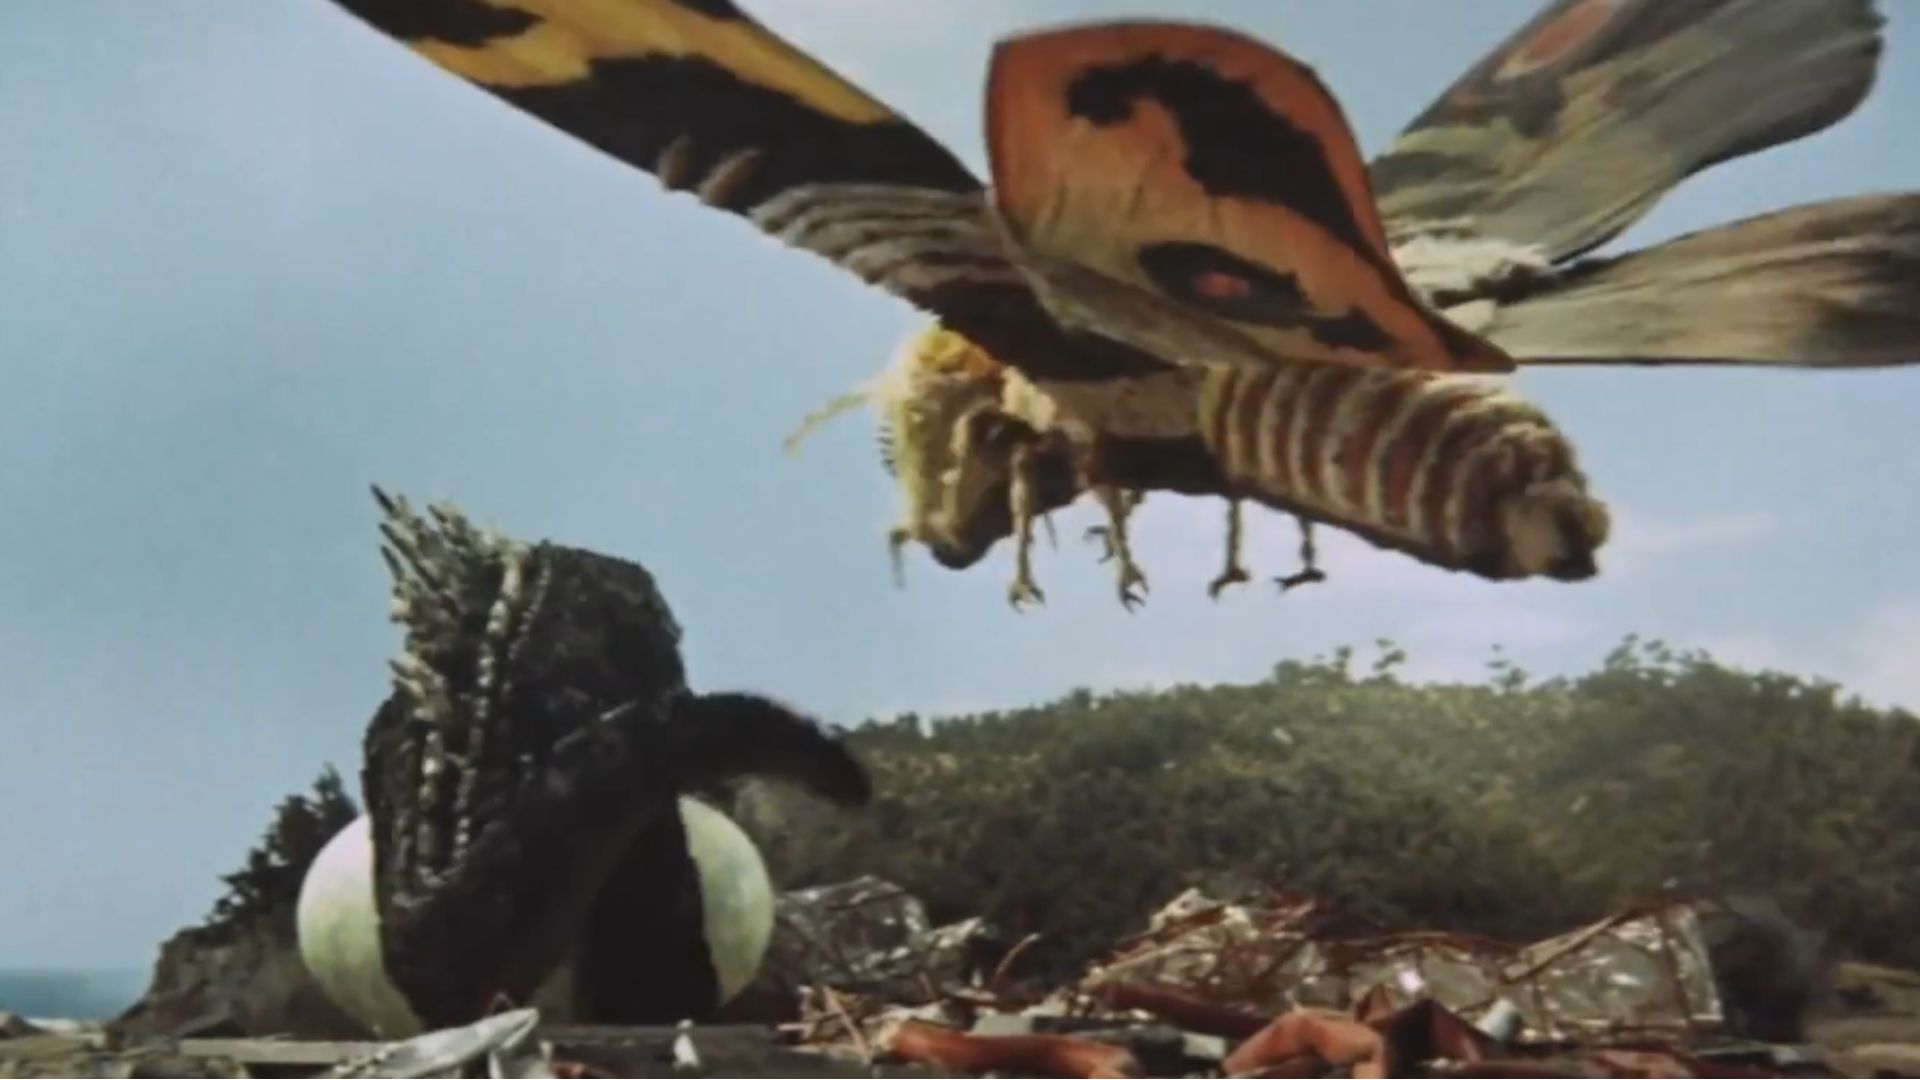 Mothra Vs. Godzilla (1964) // Ghidora, The Three-Headed Monster (1964) still